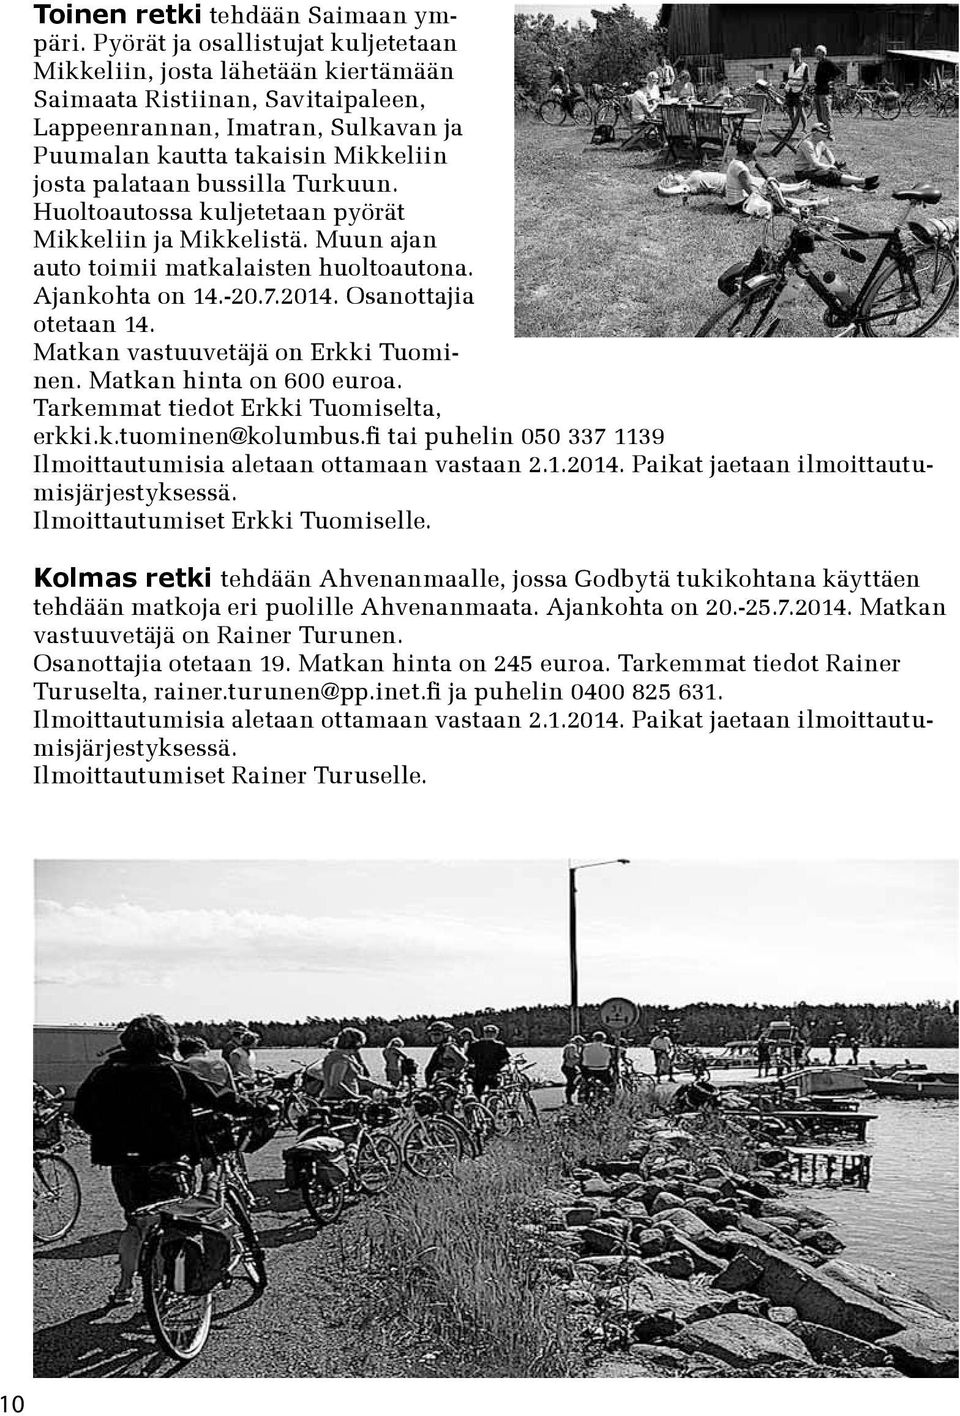 bussilla Turkuun. Huoltoautossa kuljetetaan pyörät Mikkeliin ja Mikkelistä. Muun ajan auto toimii matkalaisten huoltoautona. Ajankohta on 14.-20.7.2014. Osanottajia otetaan 14.